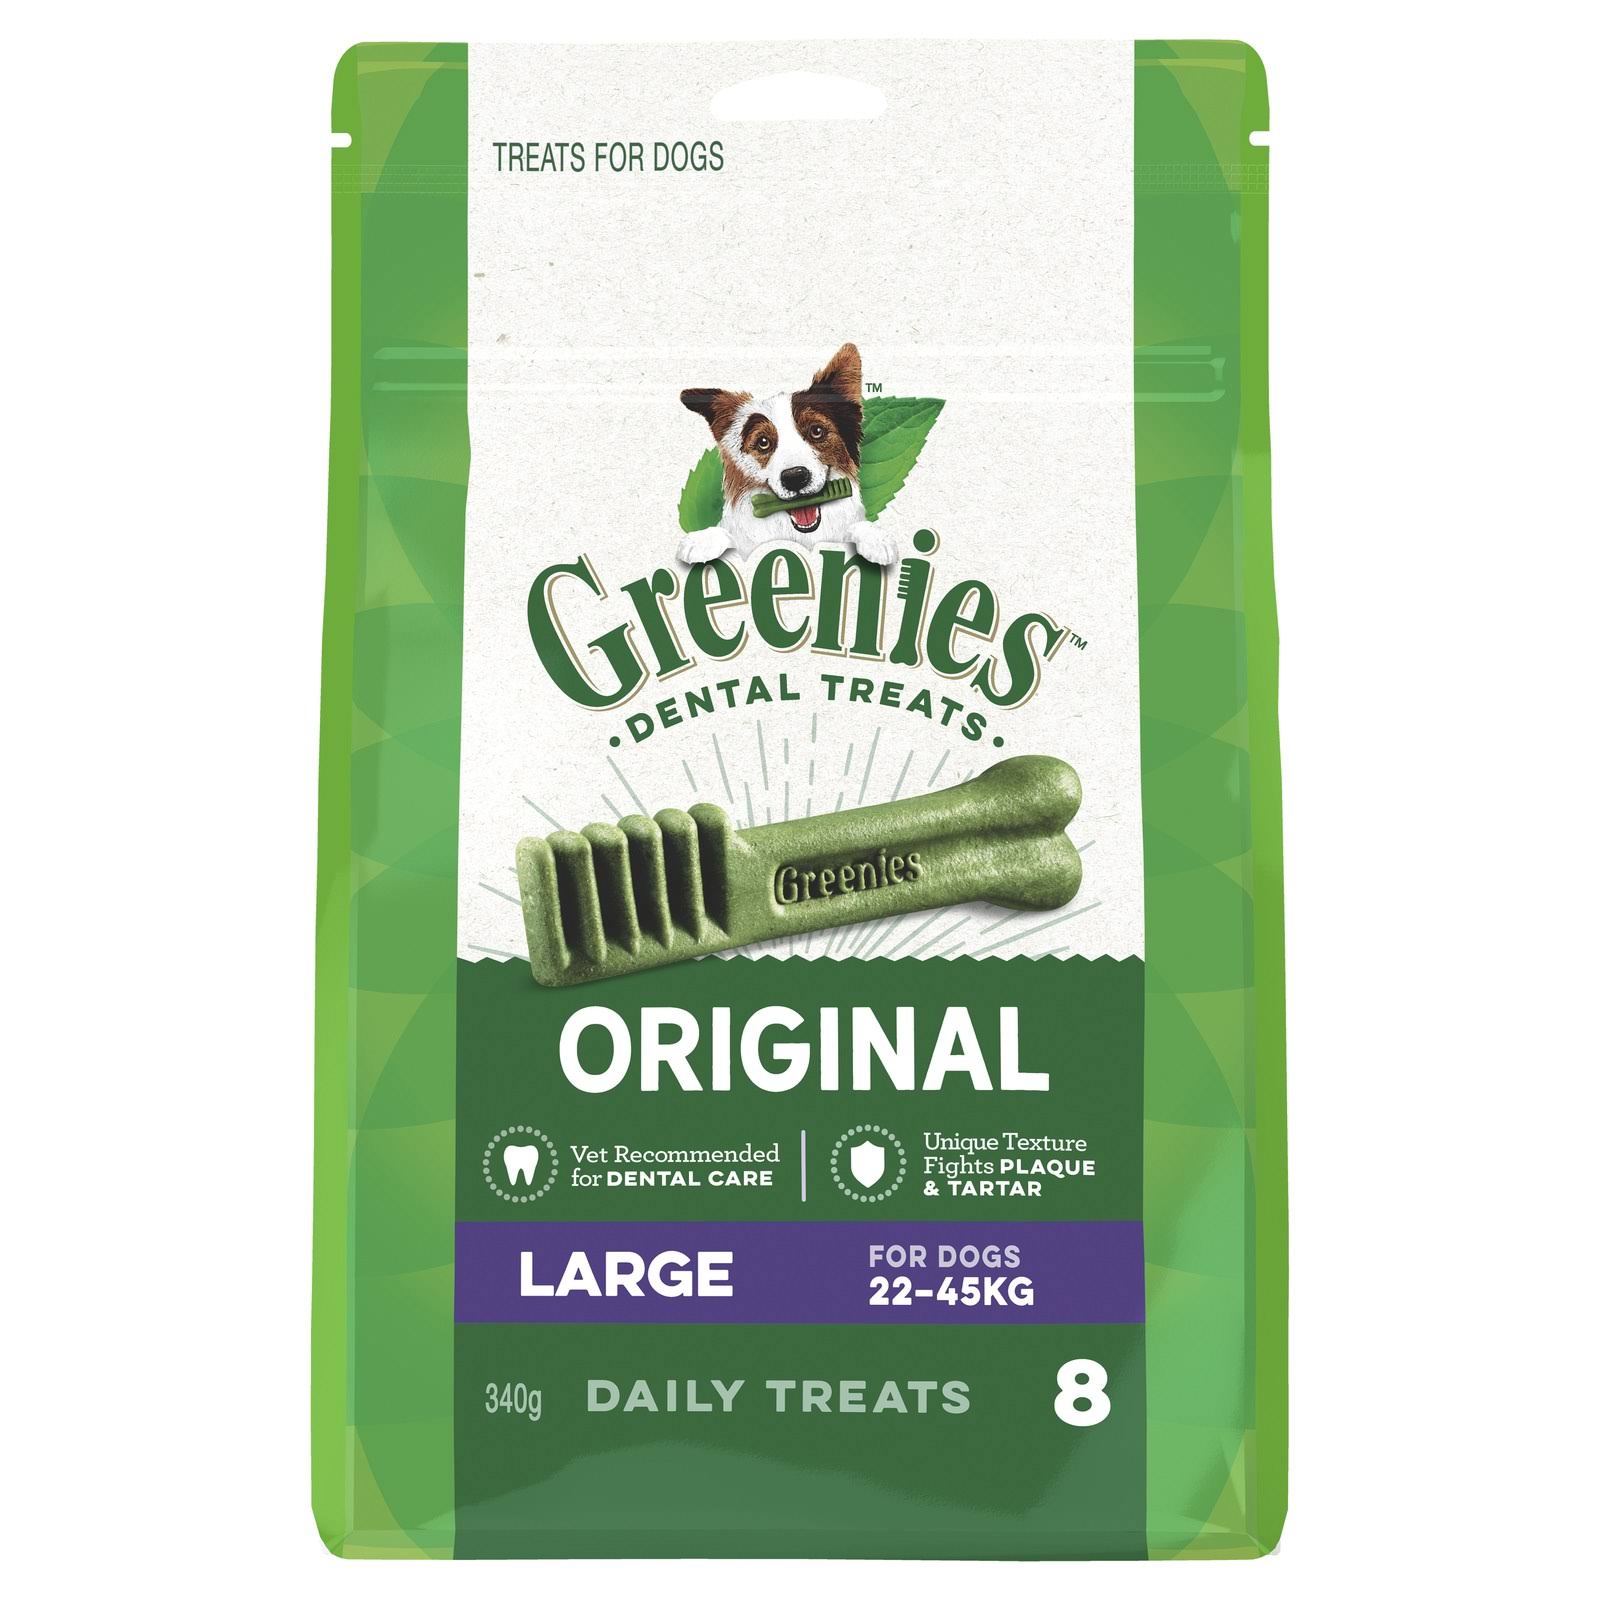 Greenies Dental Dog Treats - 340g, 8 Daily Treats